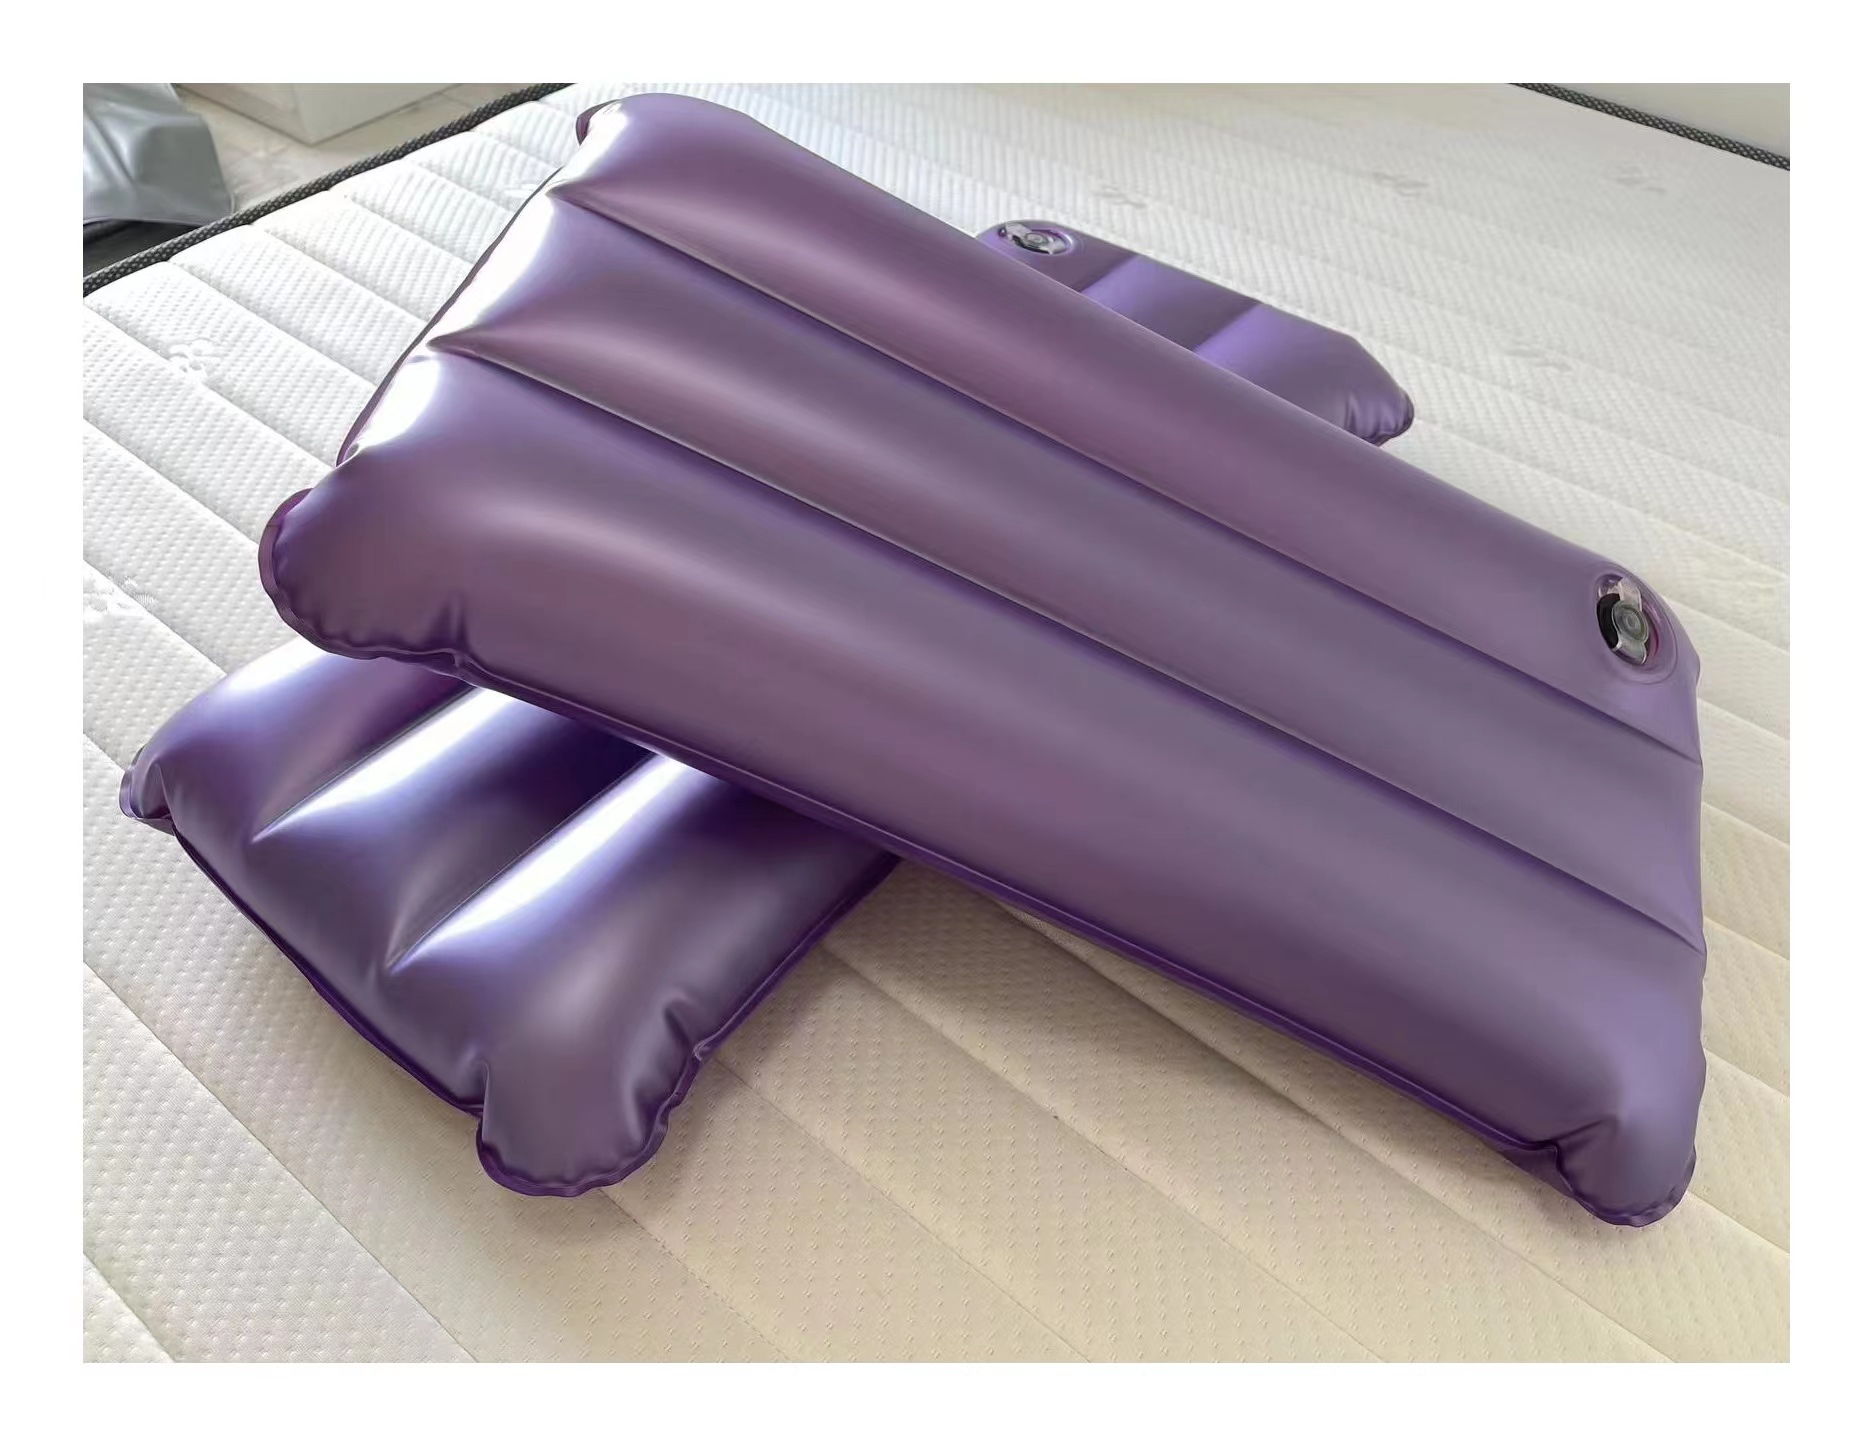 充气充水枕头可换水冰枕单双人抱枕软枕降温舒适颈椎枕头坐垫脚垫